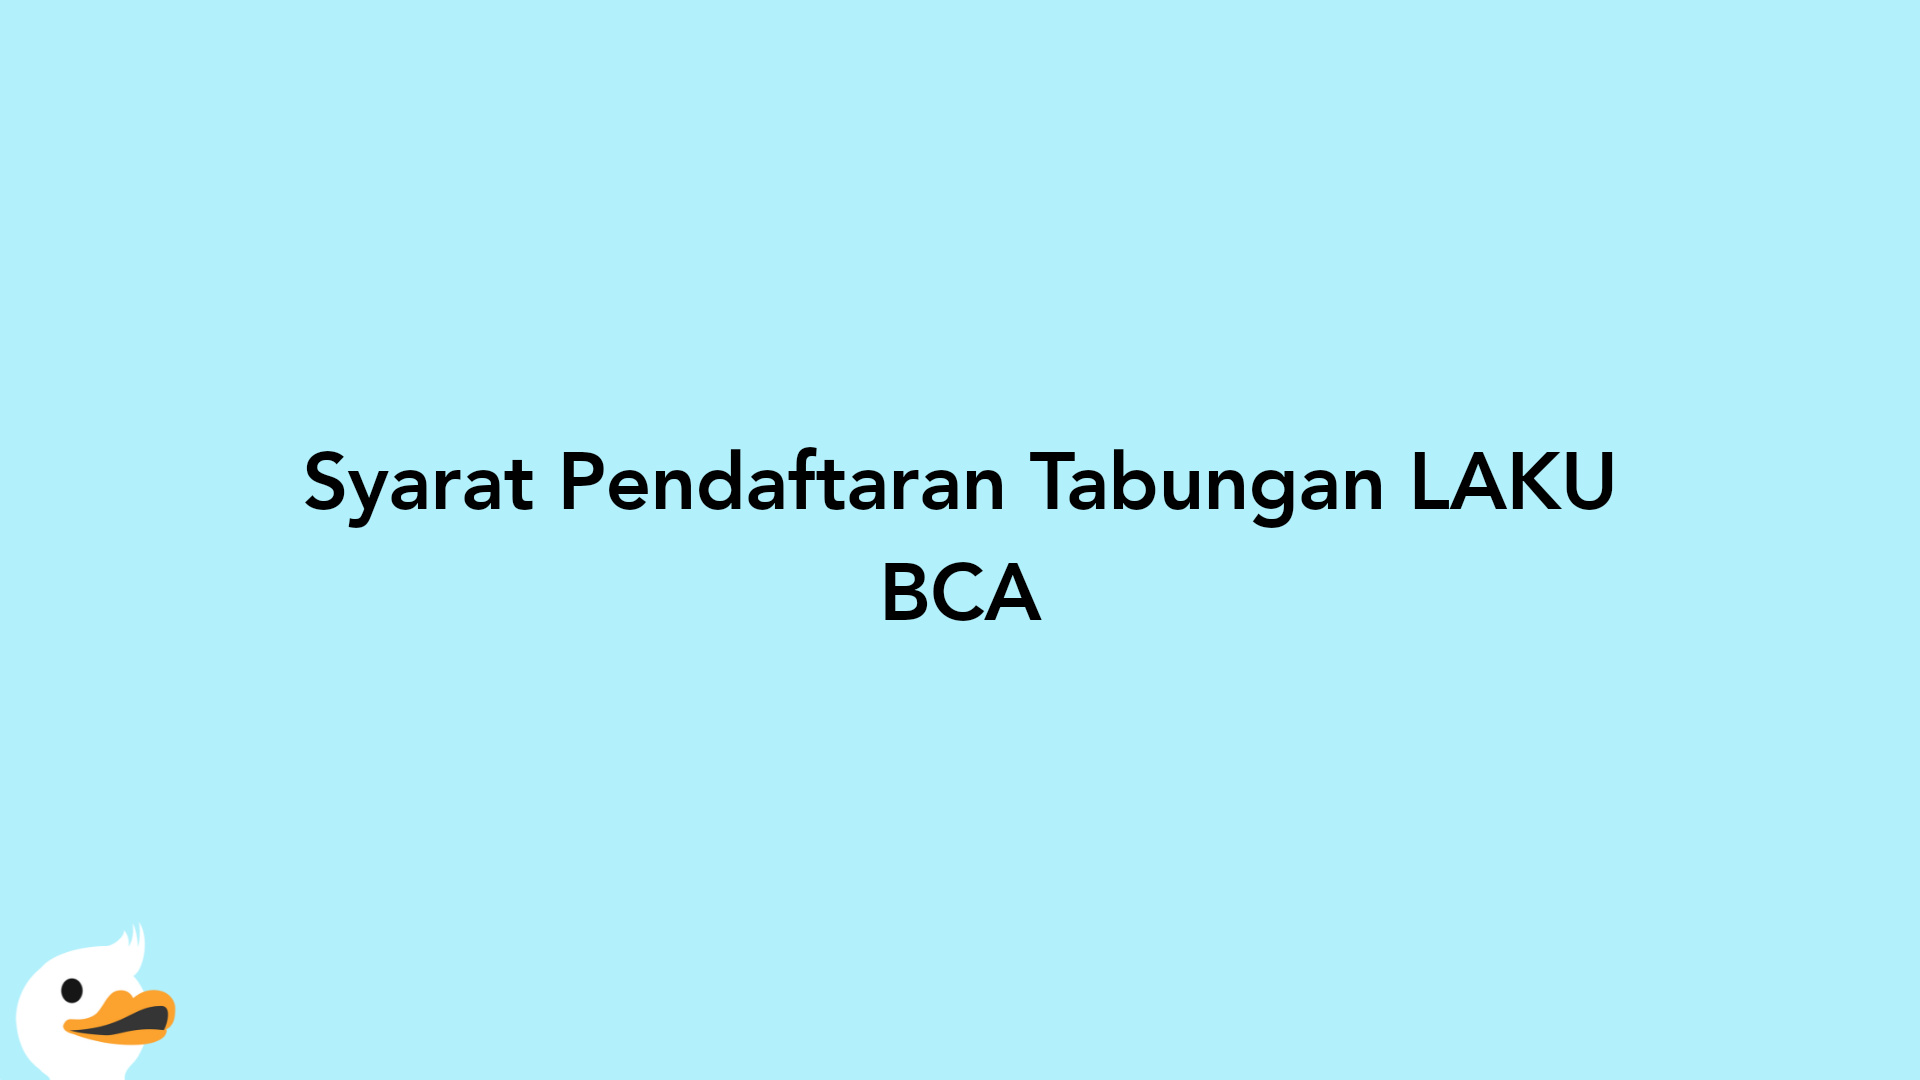 Syarat Pendaftaran Tabungan LAKU BCA